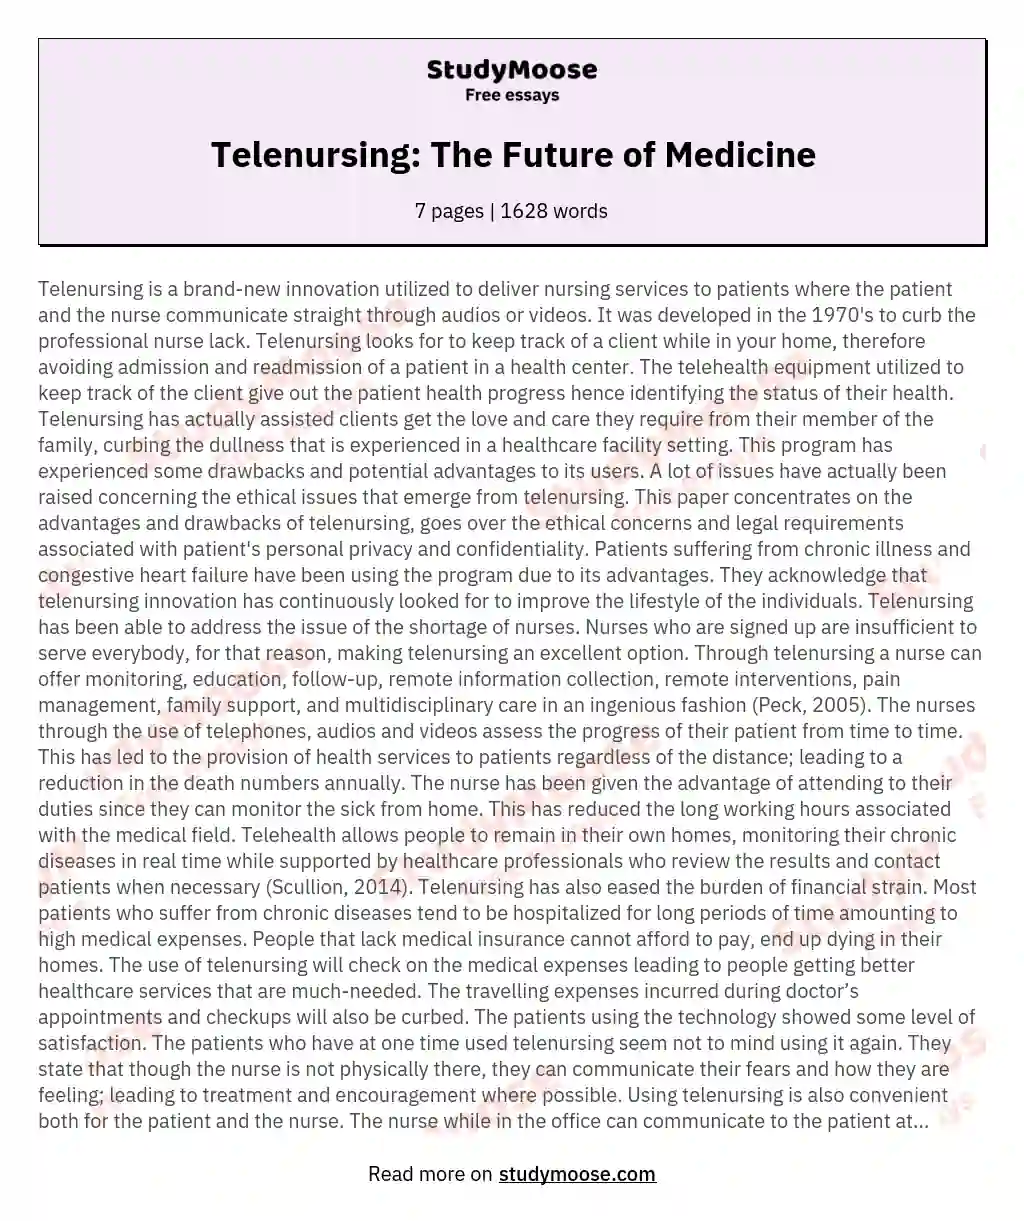 Telenursing: The Future of Medicine essay